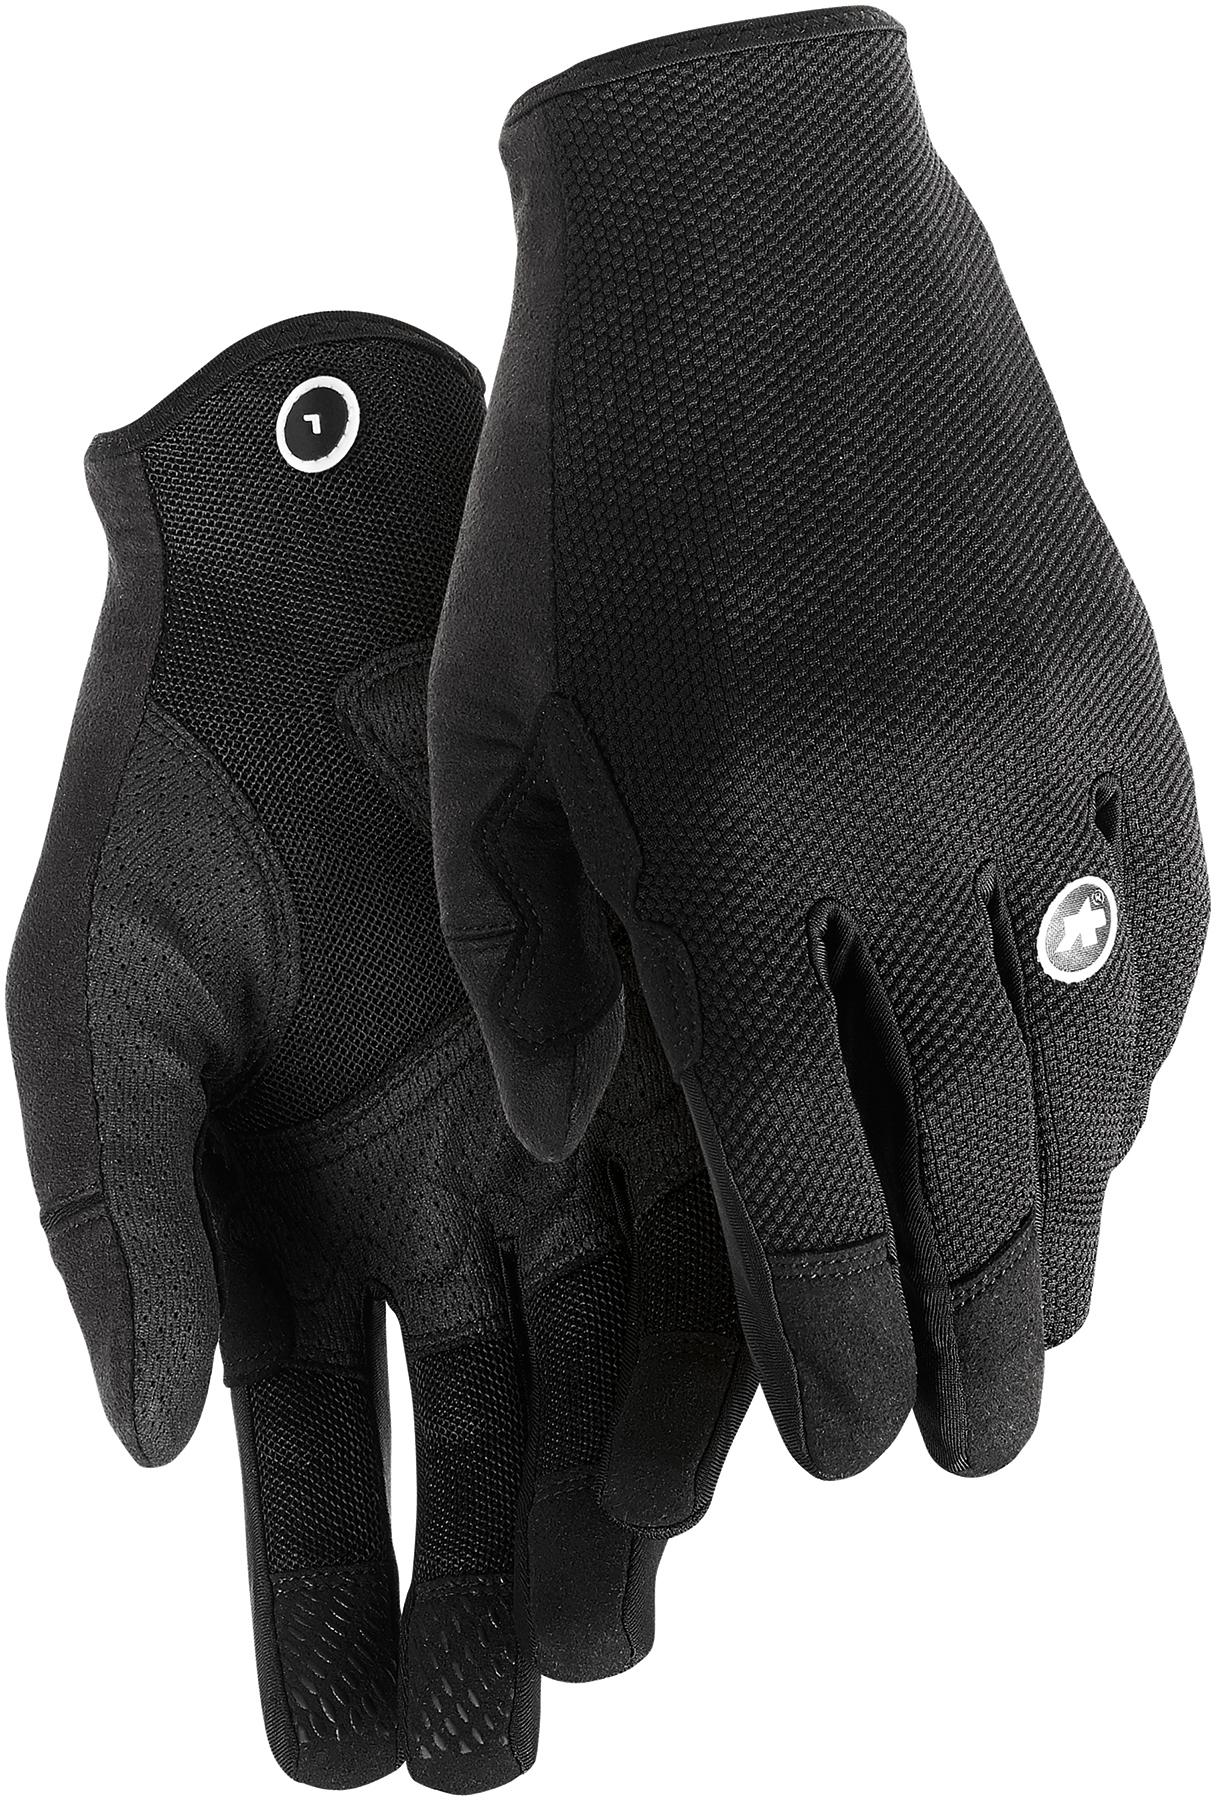 Assos Trail Ff Gloves - Black Series